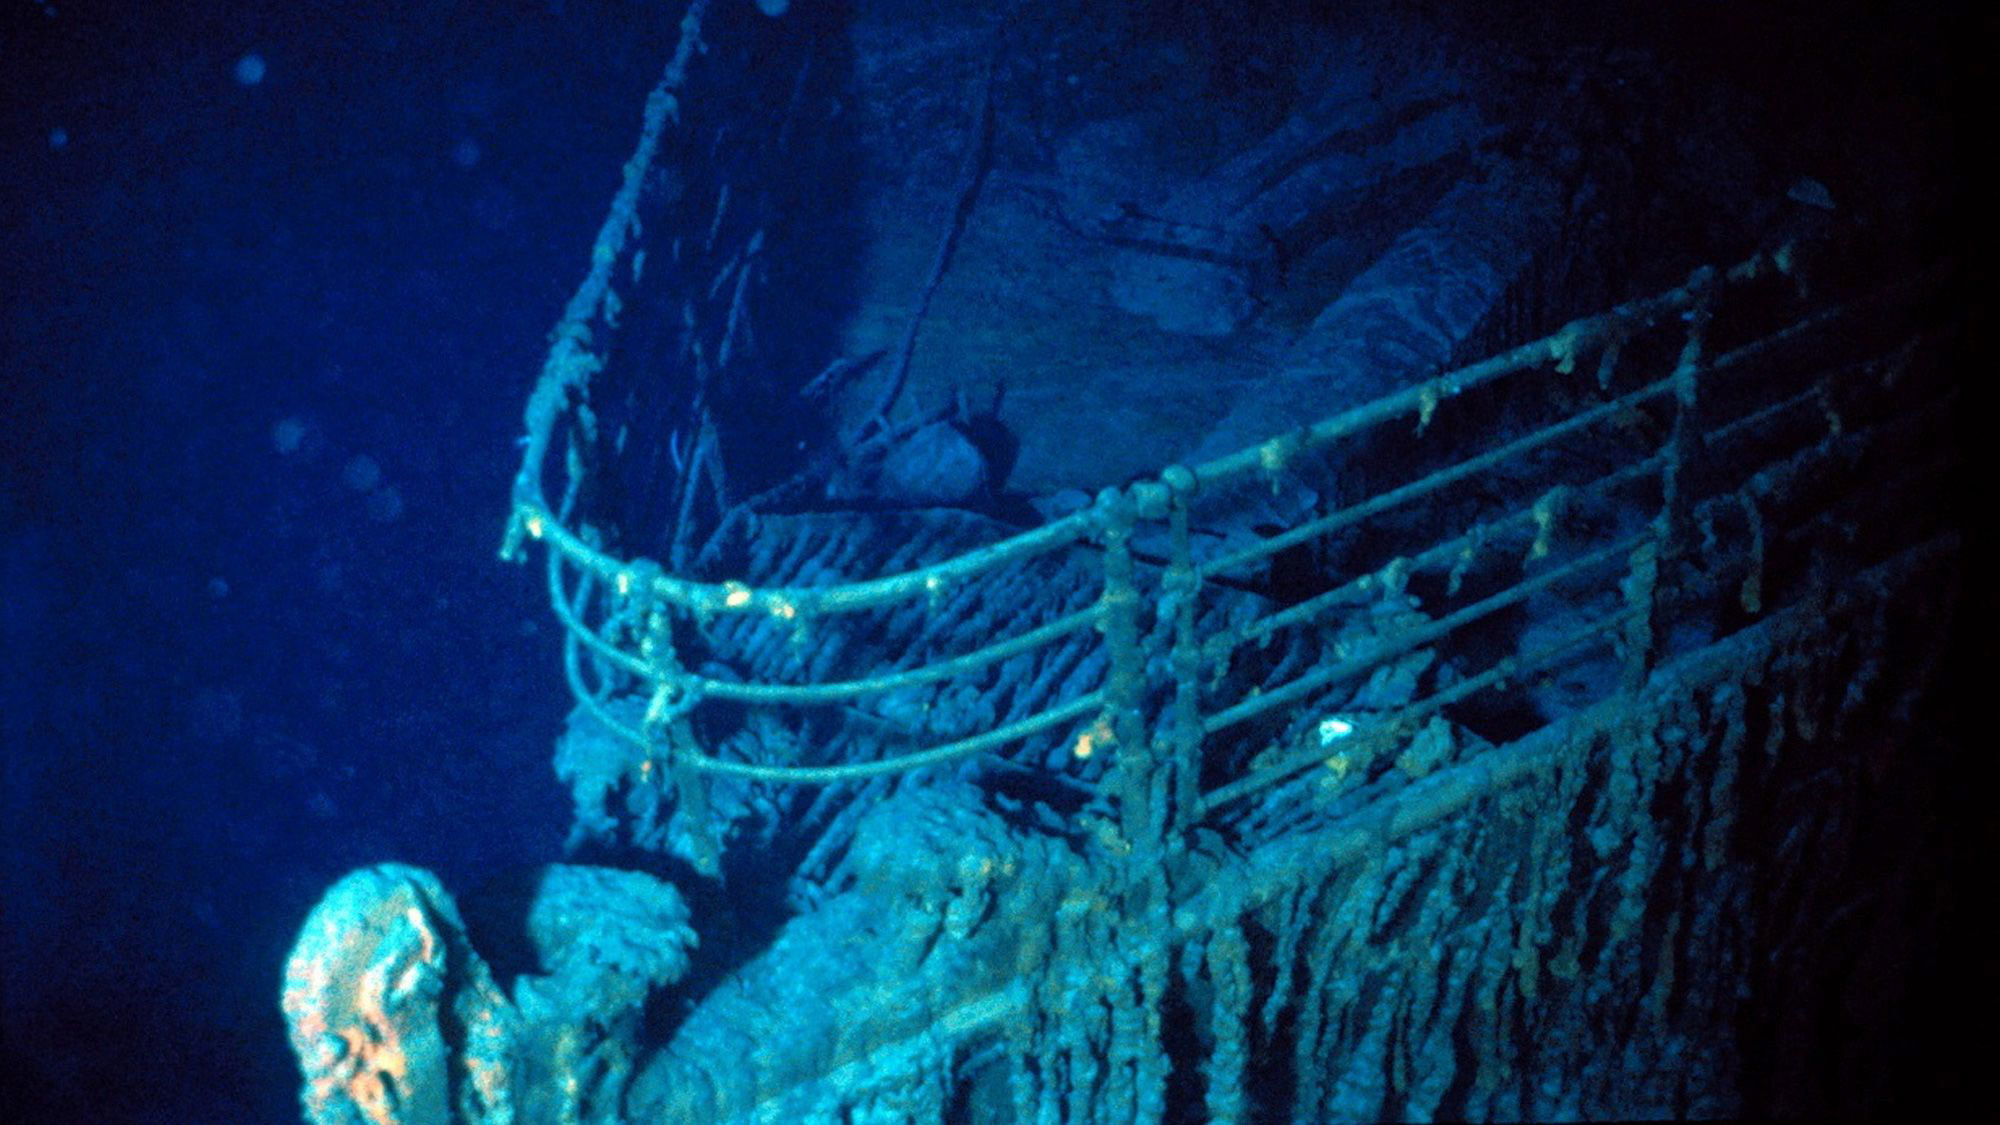 La proa del Titanic, fotografiada durante una de las primeras inmersiones en el barco en 1986.